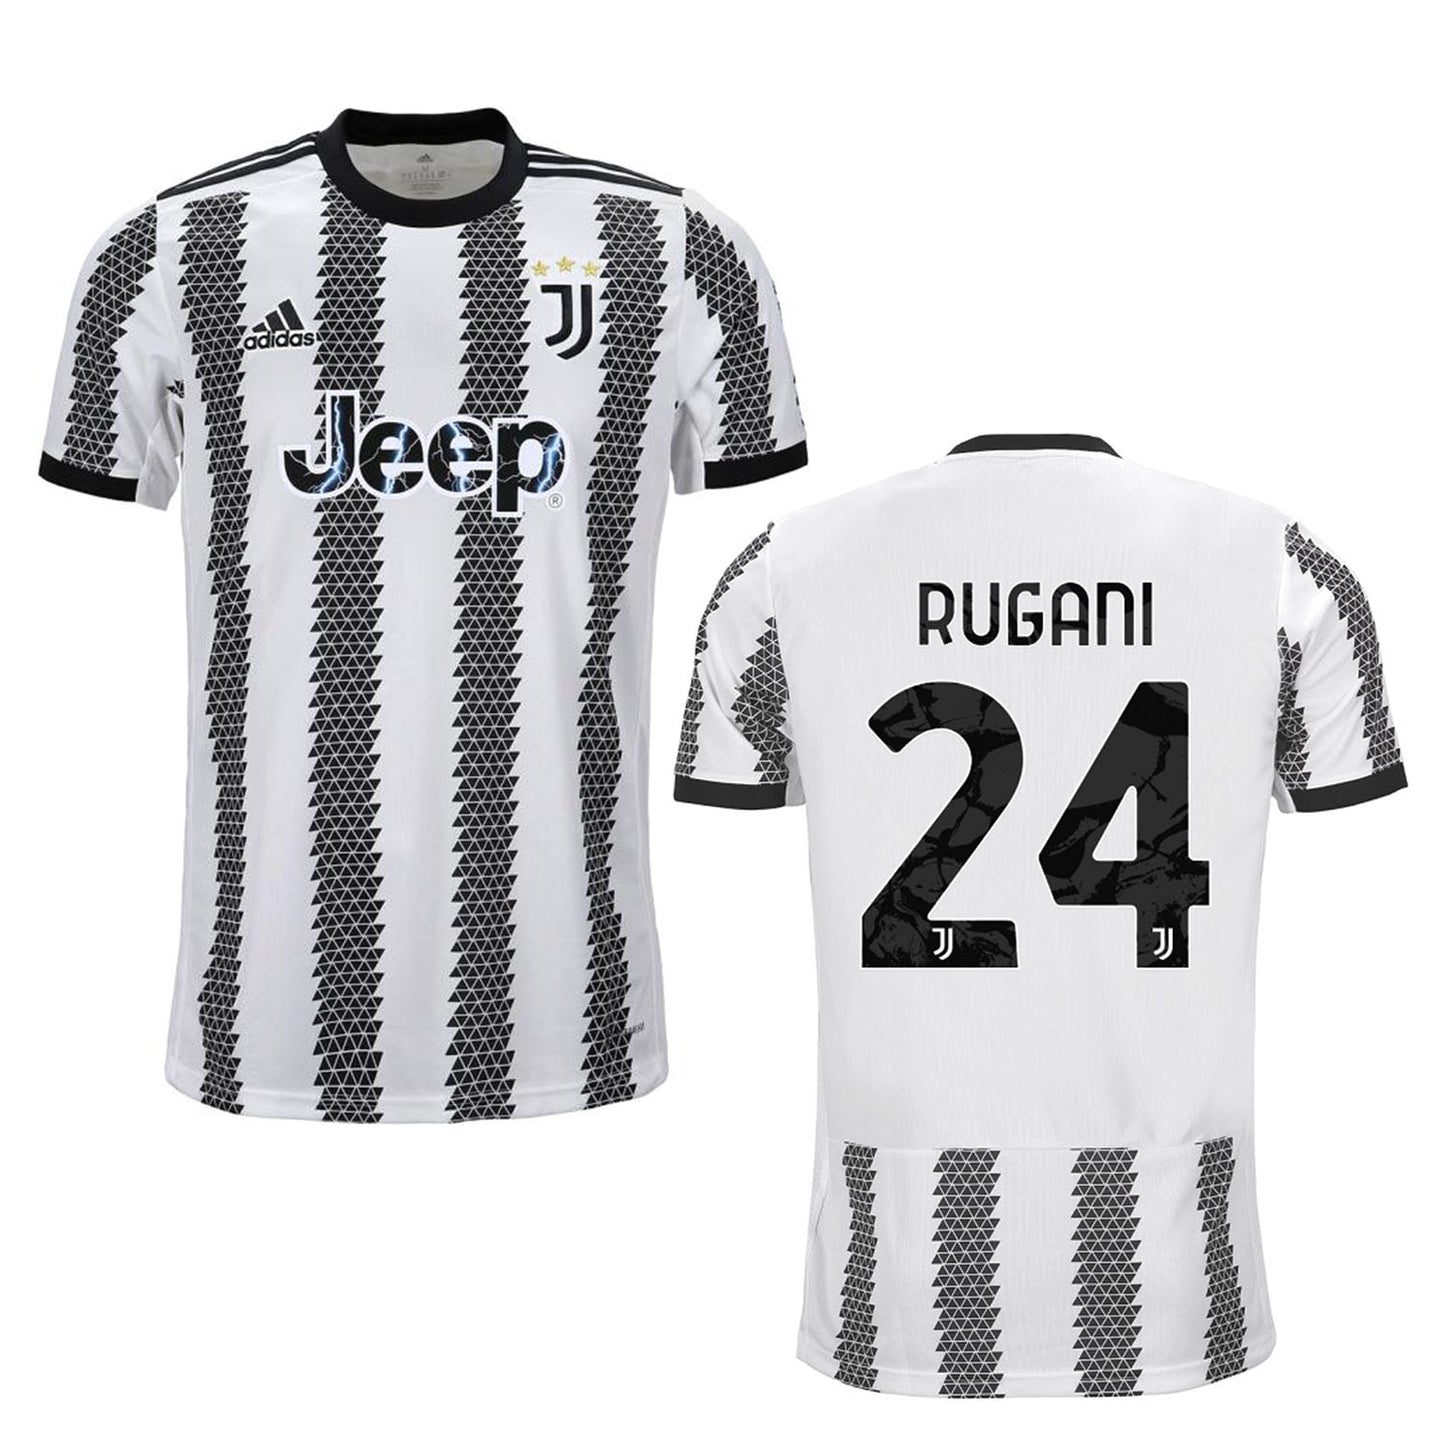 Daniele Rugani Juventus 24 Jersey